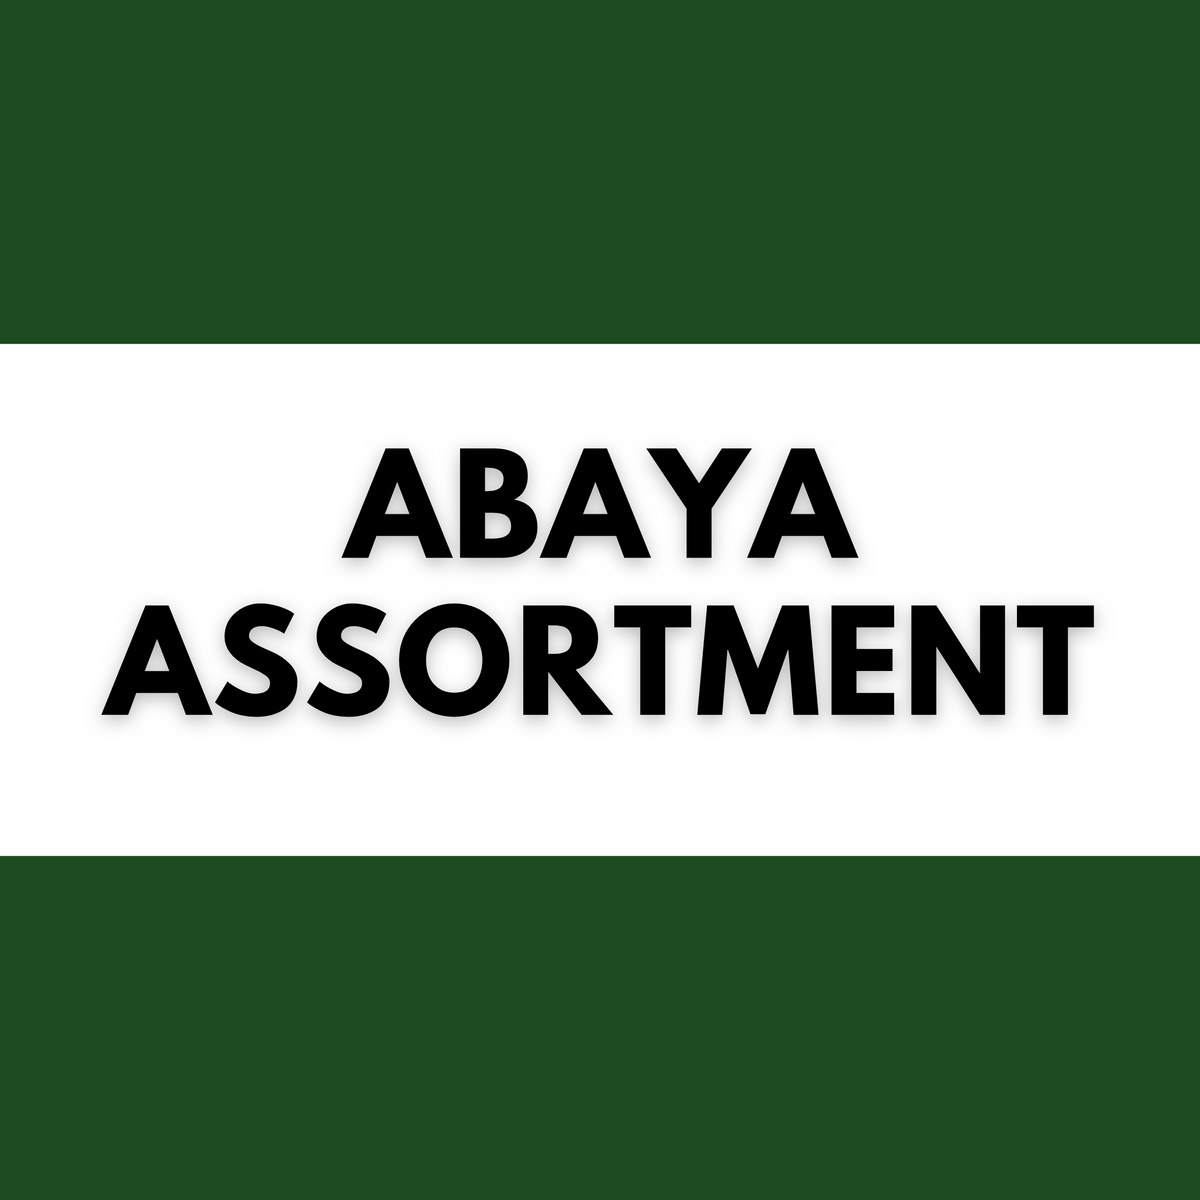 ABAYA ASSORTMENT